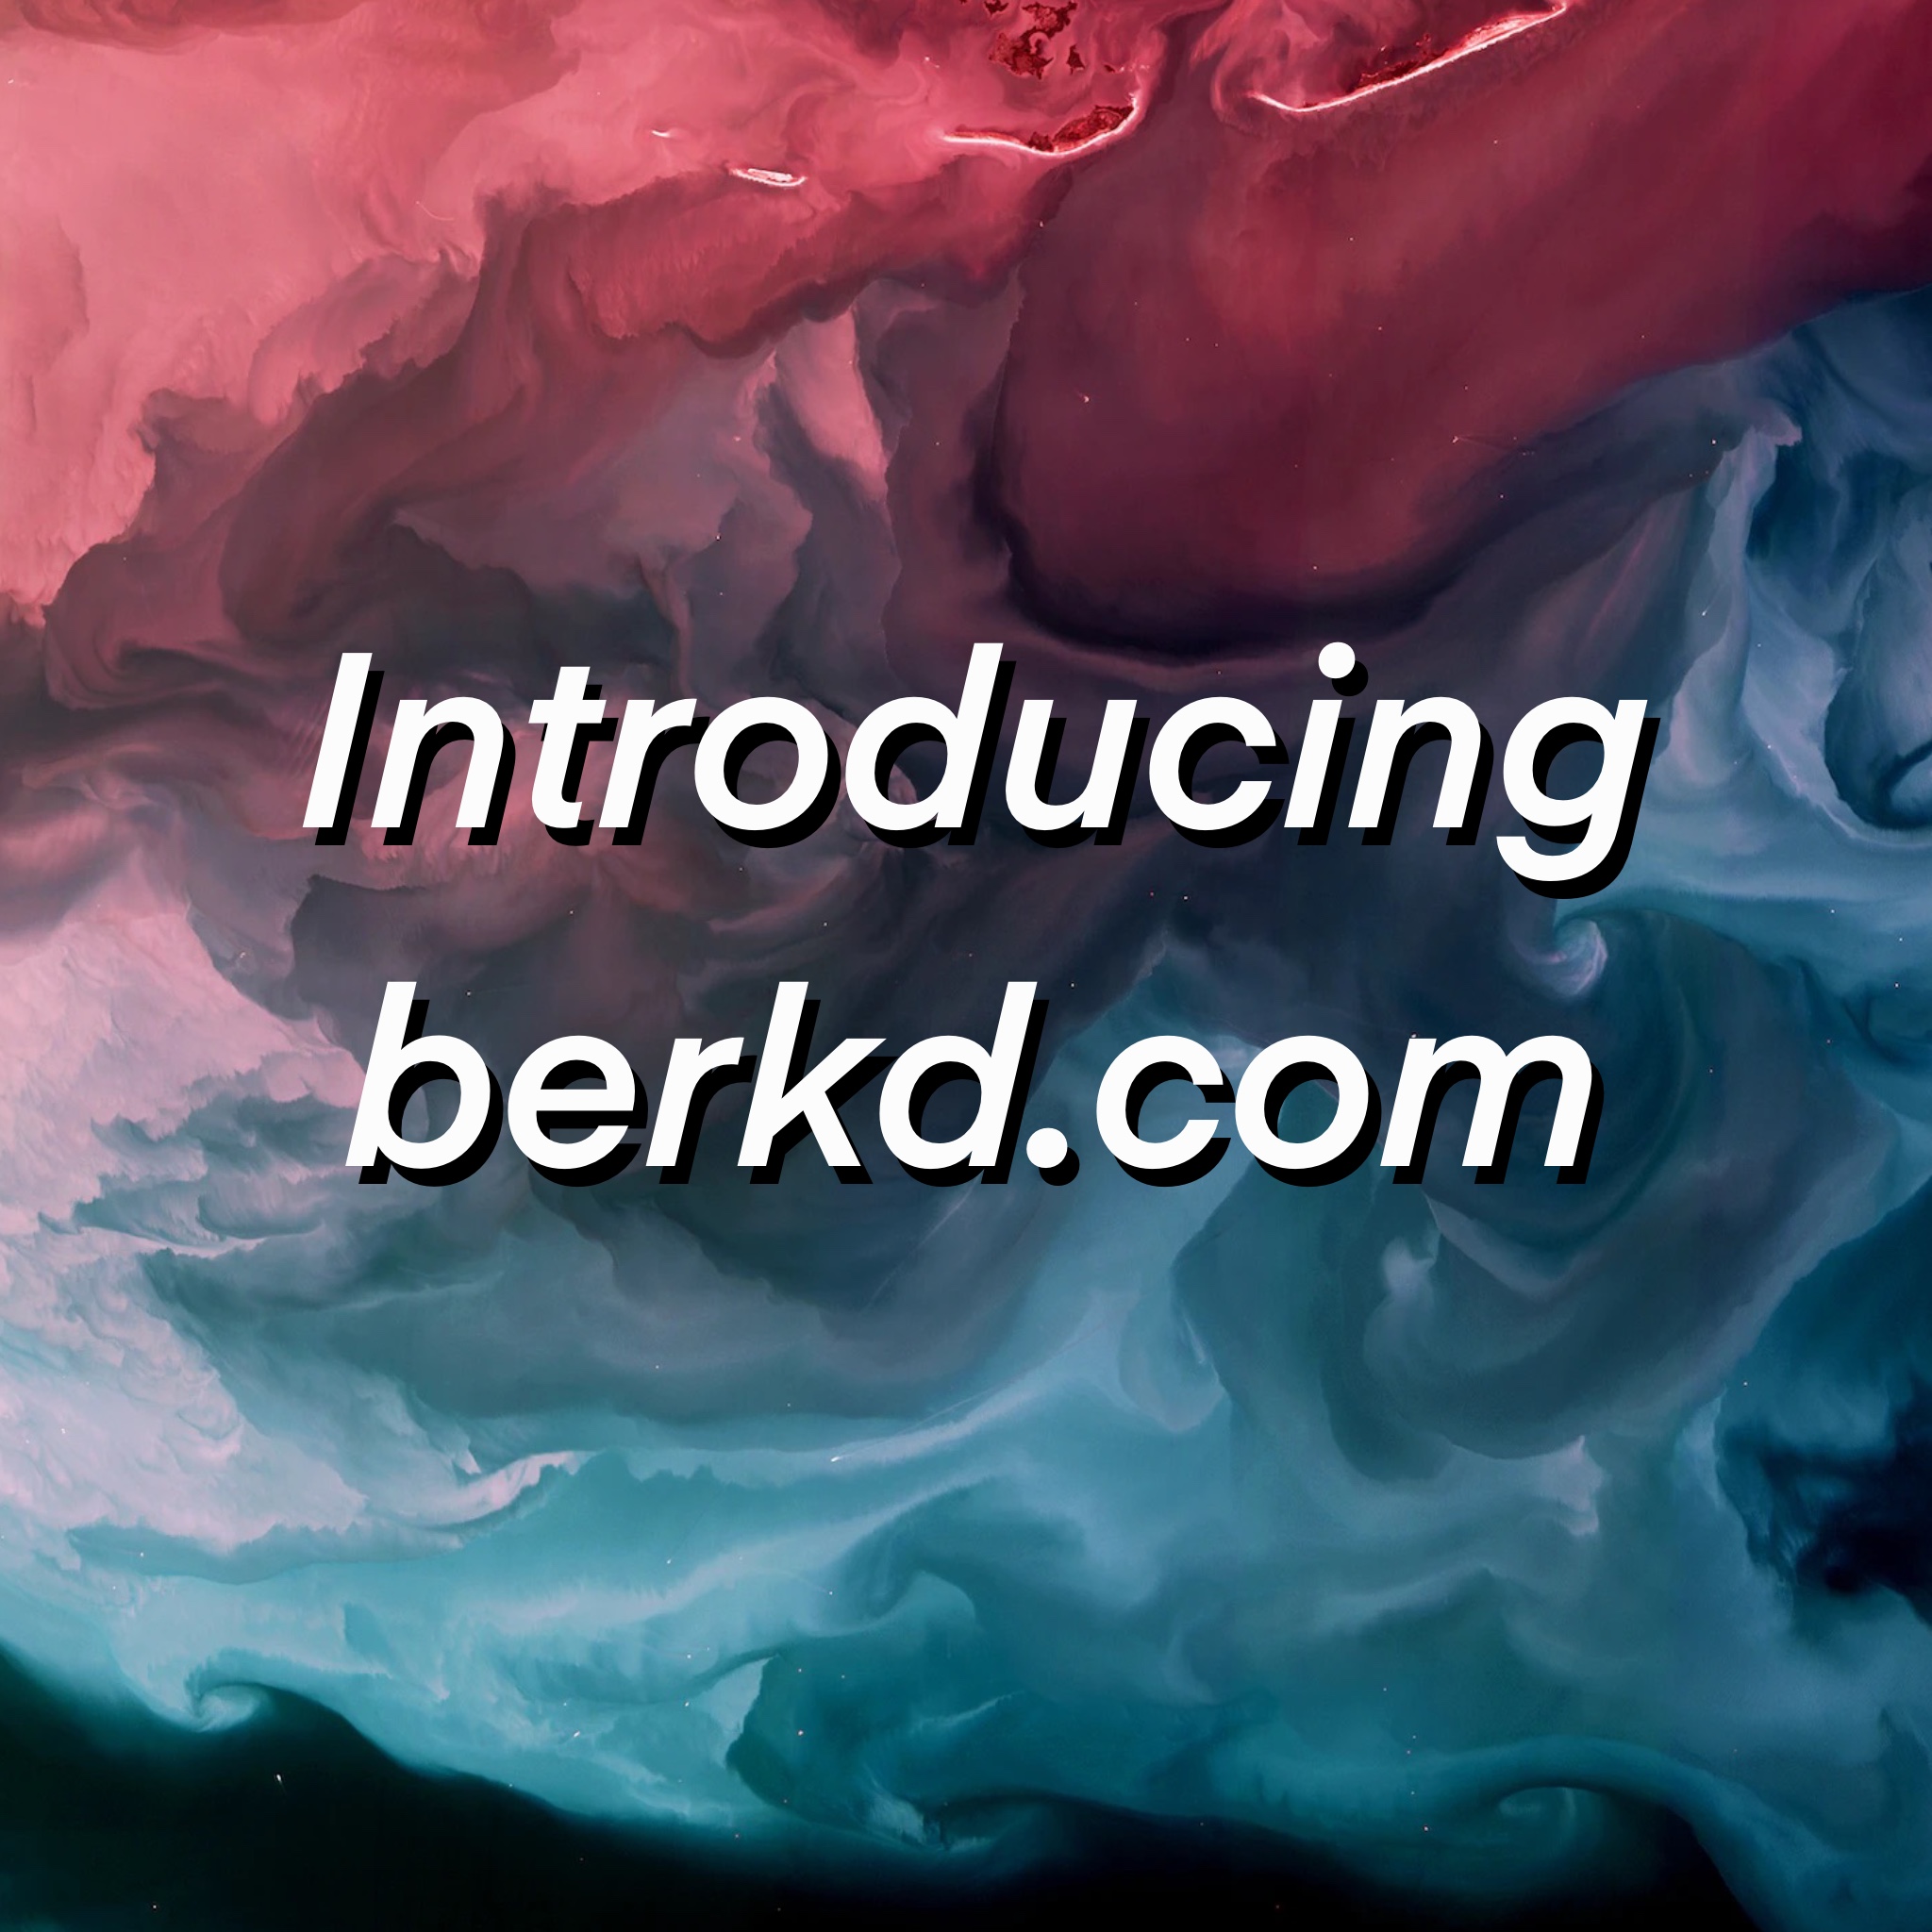 Blog transitioning to “berkdogan.com”